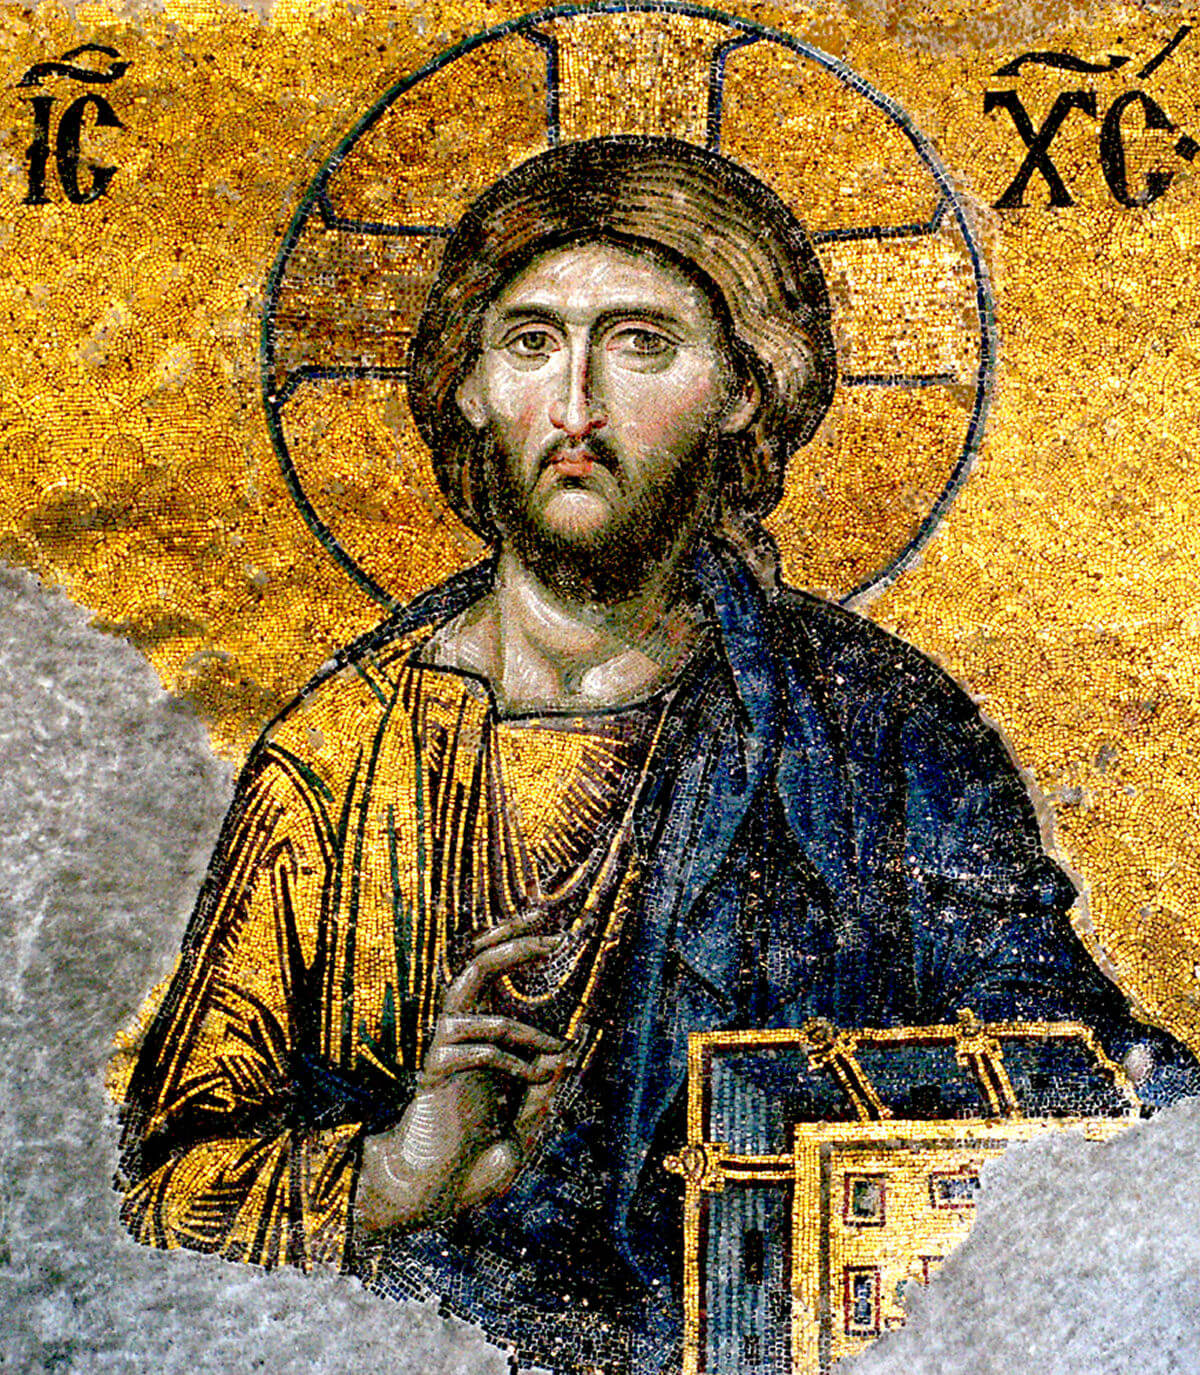 Jesus Christ Pantocrator. Detail from the deesis mosaic in Hagia Sophia, Istanbul, Türkiye